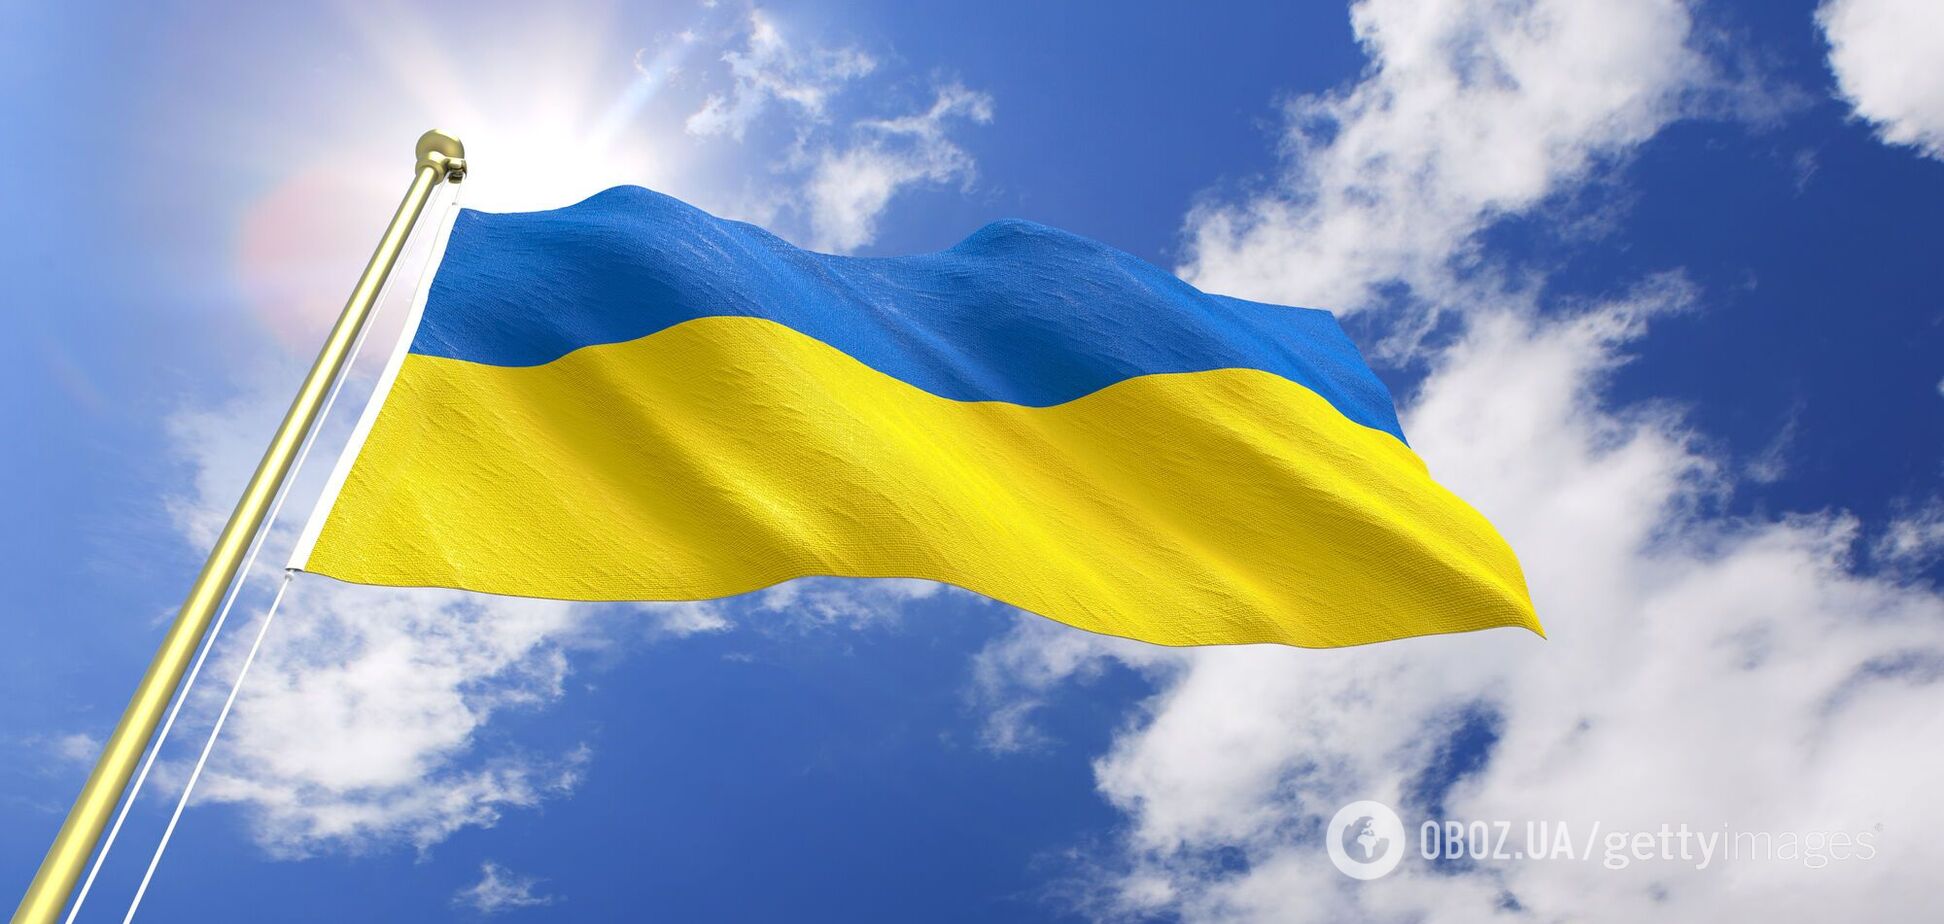 Украина нуждается бюджета жизни, а не бюджета для власти и МВФ